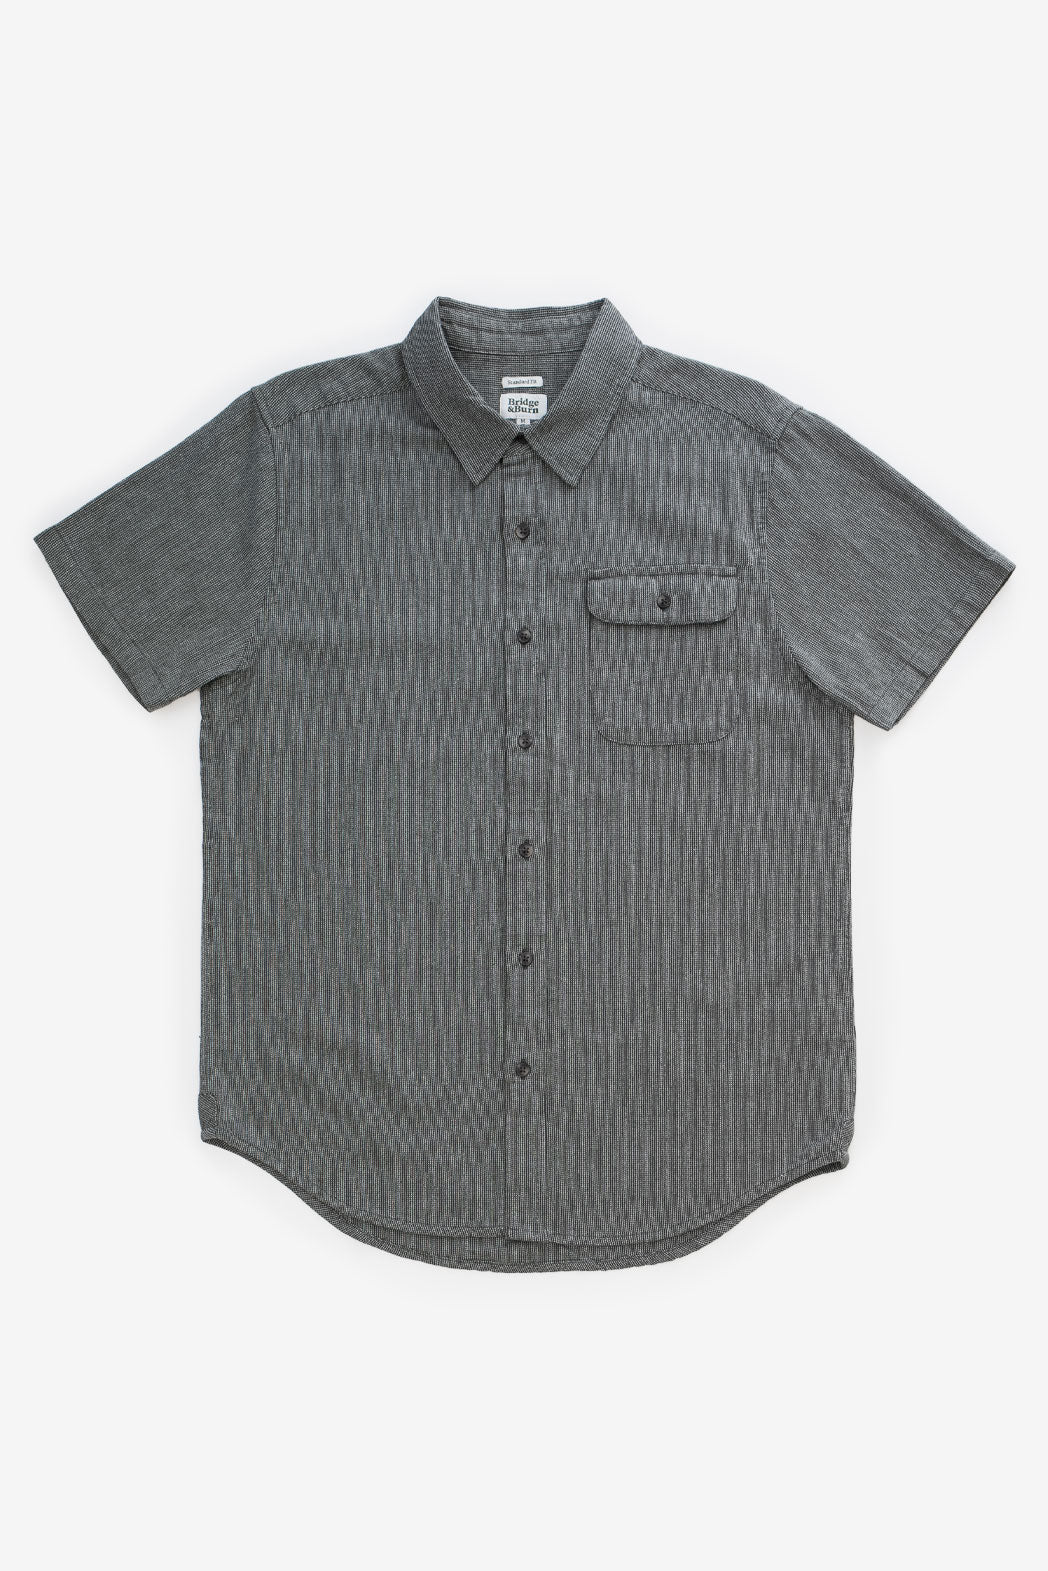 Marten Shirt / Lichen Chevron